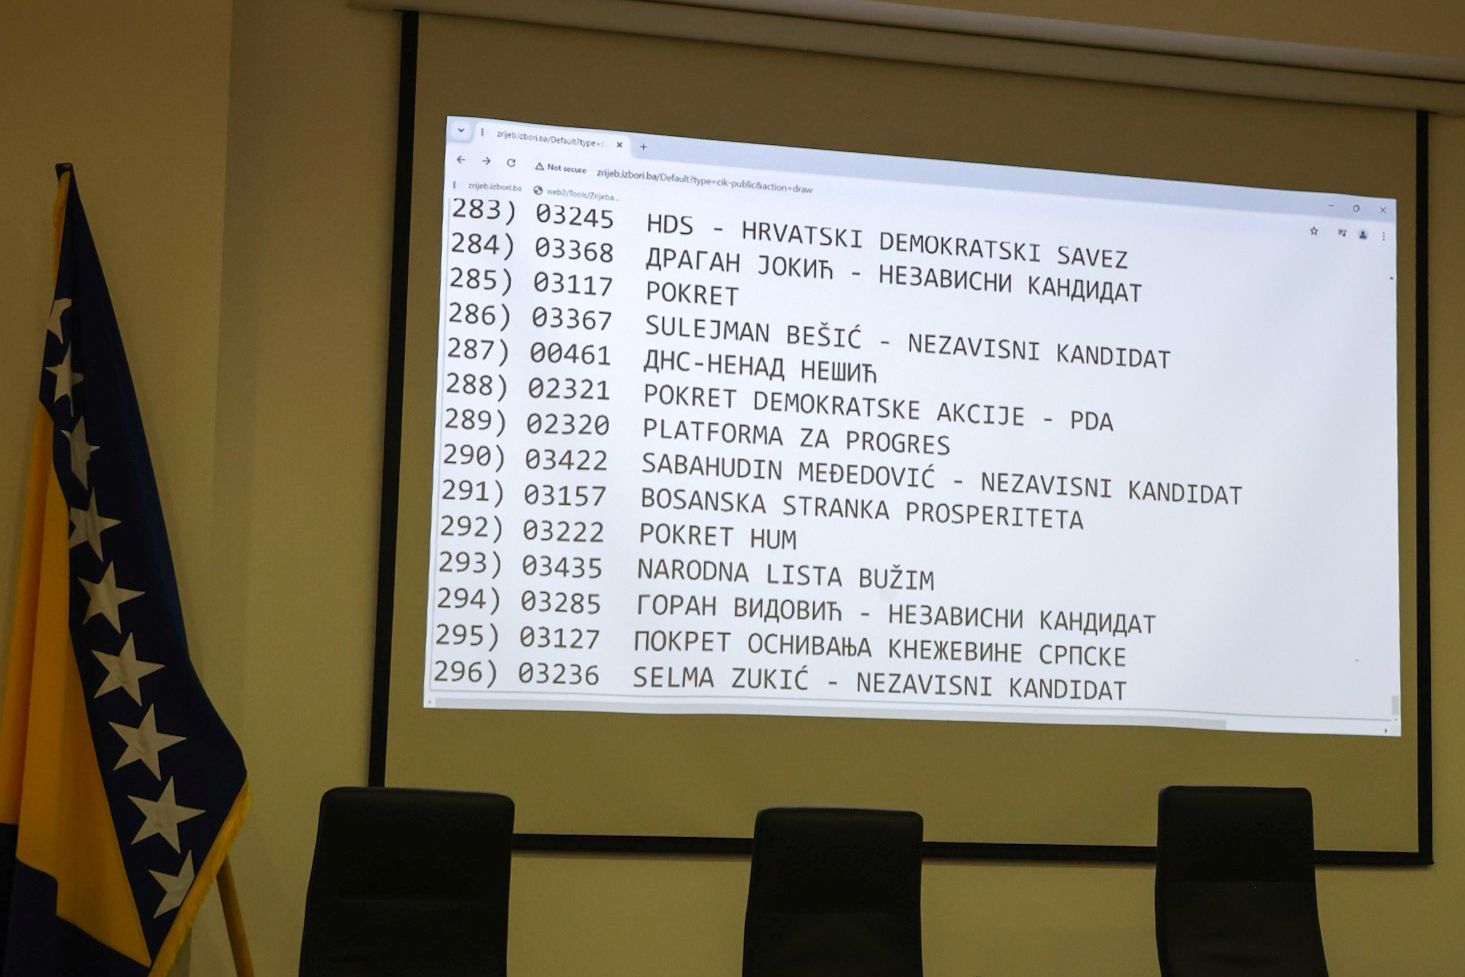 CIK BiH: Utvrđen redoslijed političkih subjekata na glasačkom listiću